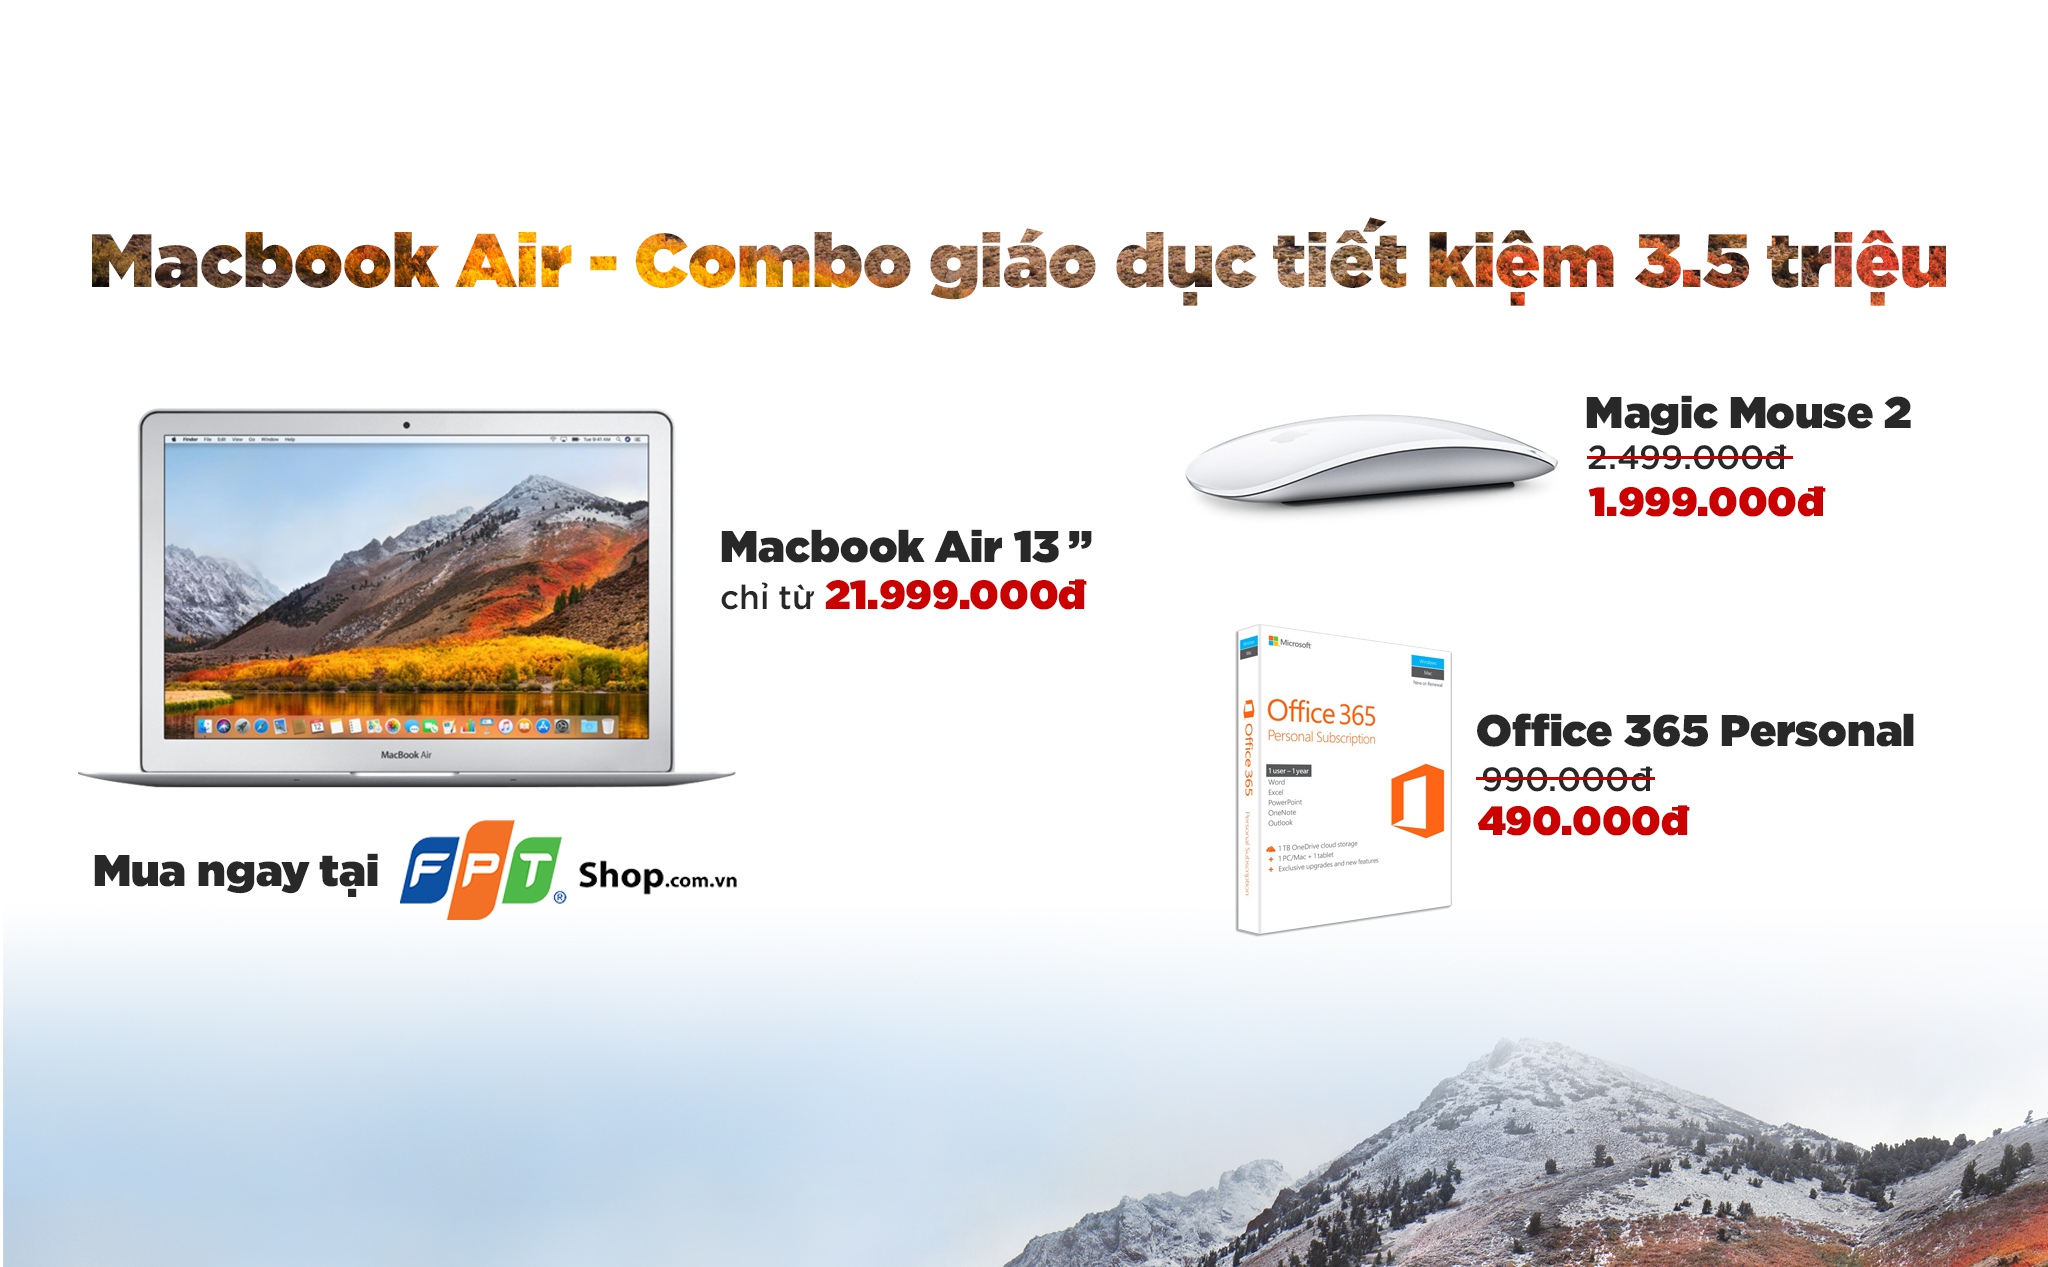 [QC] FPT Shop giảm đến 3,5 triệu đồng cho Macbook Air - Combo giáo dục